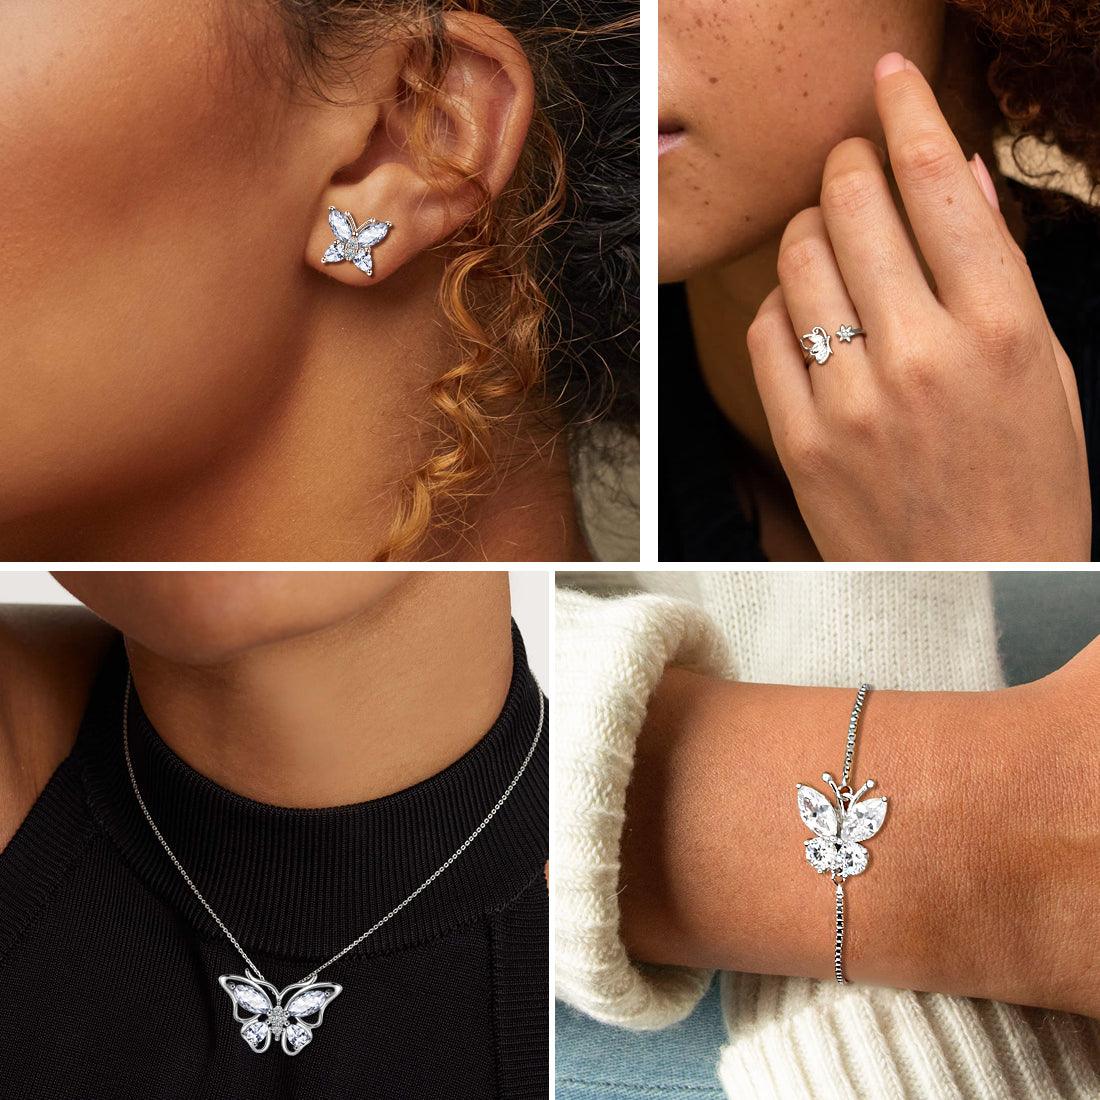 Butterfly Jewelry Set Birthstone April Diamond - Jewelry Set - Aurora Tears